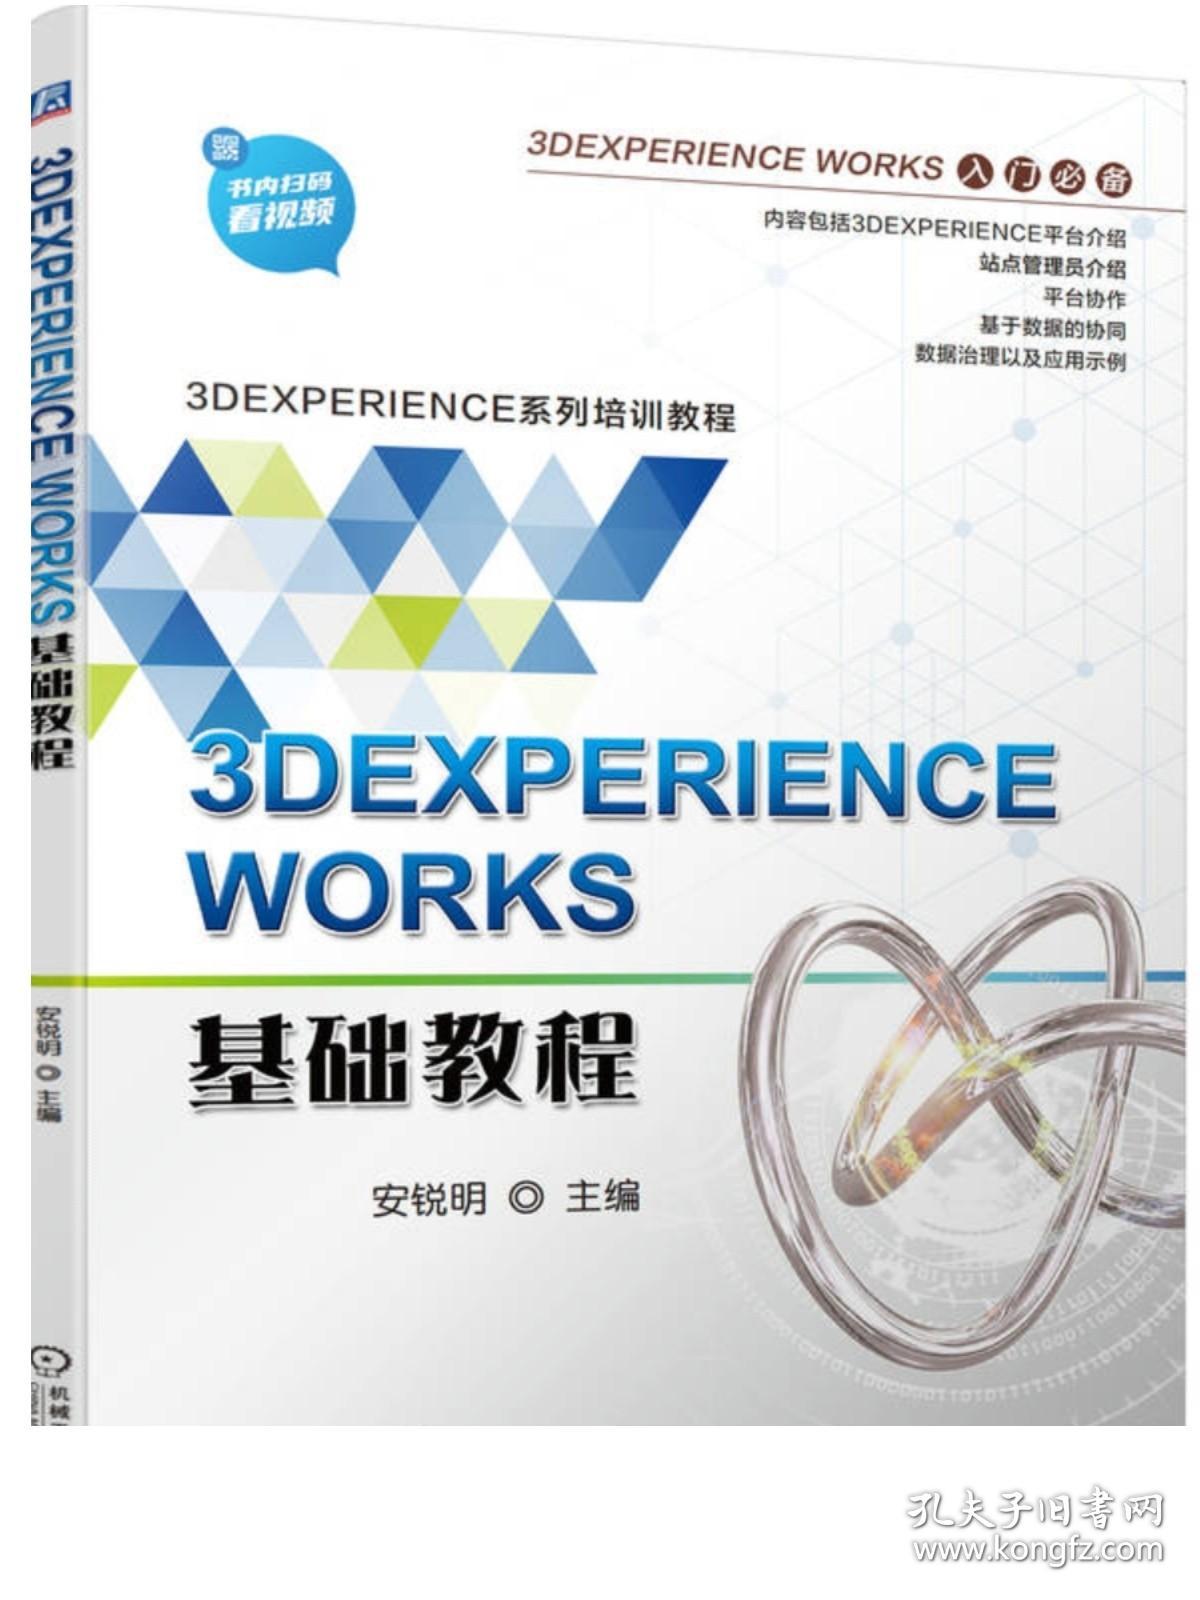 官网正版 3DEXPERIENCE WORKS基础教程 安锐明 管理员界面 平台协作 仪表板 信息沟通分享 数据协同 双色印刷 含配套视频